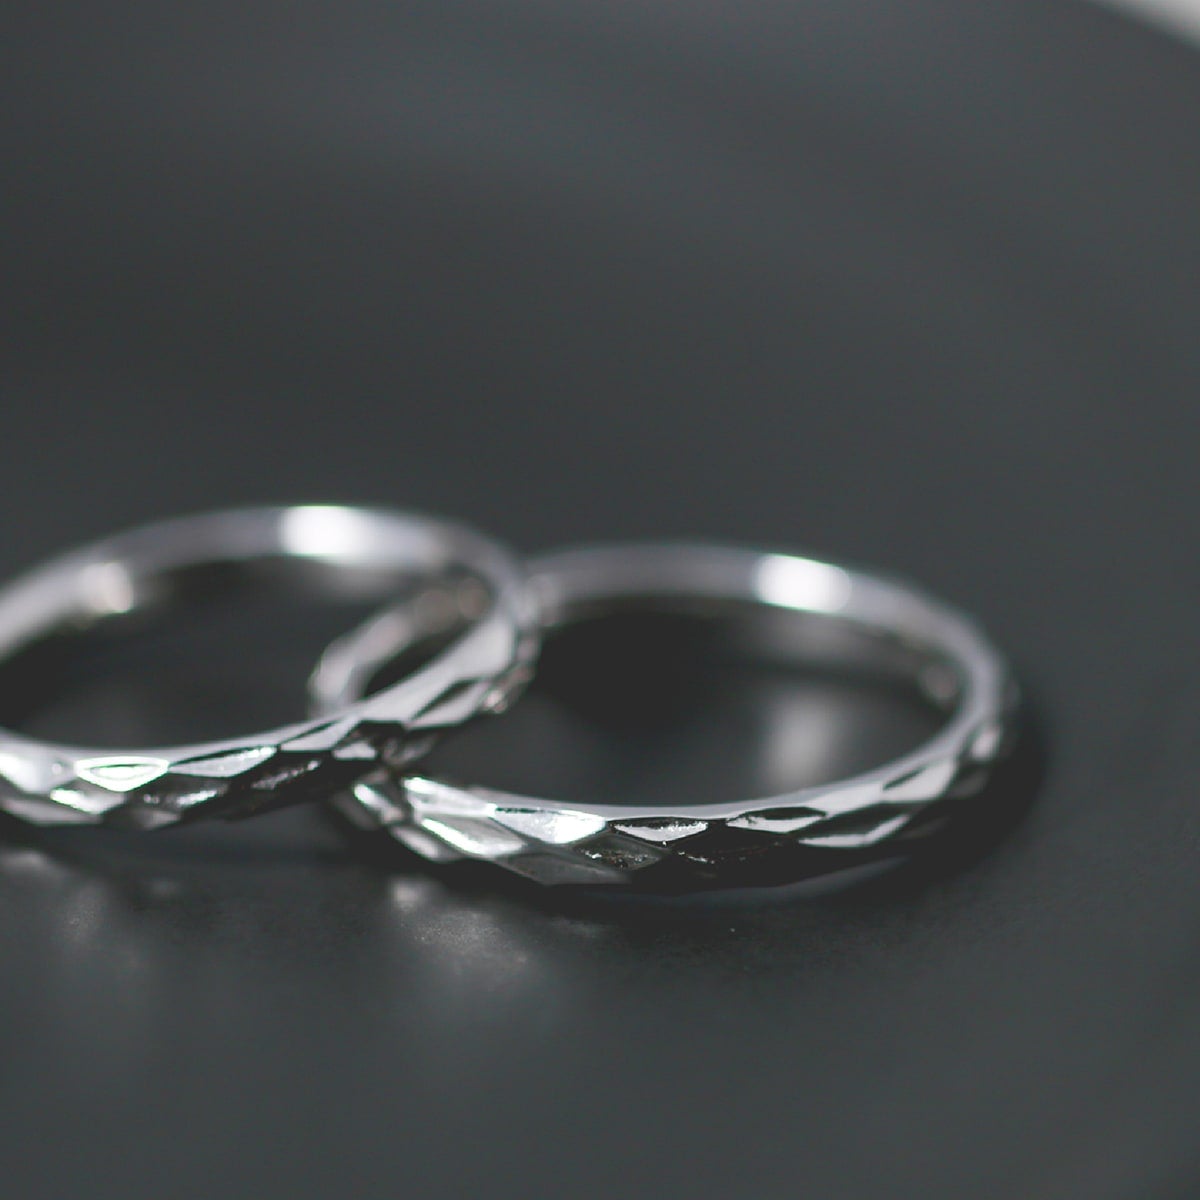 結婚指輪 2本セット | 32749-32768